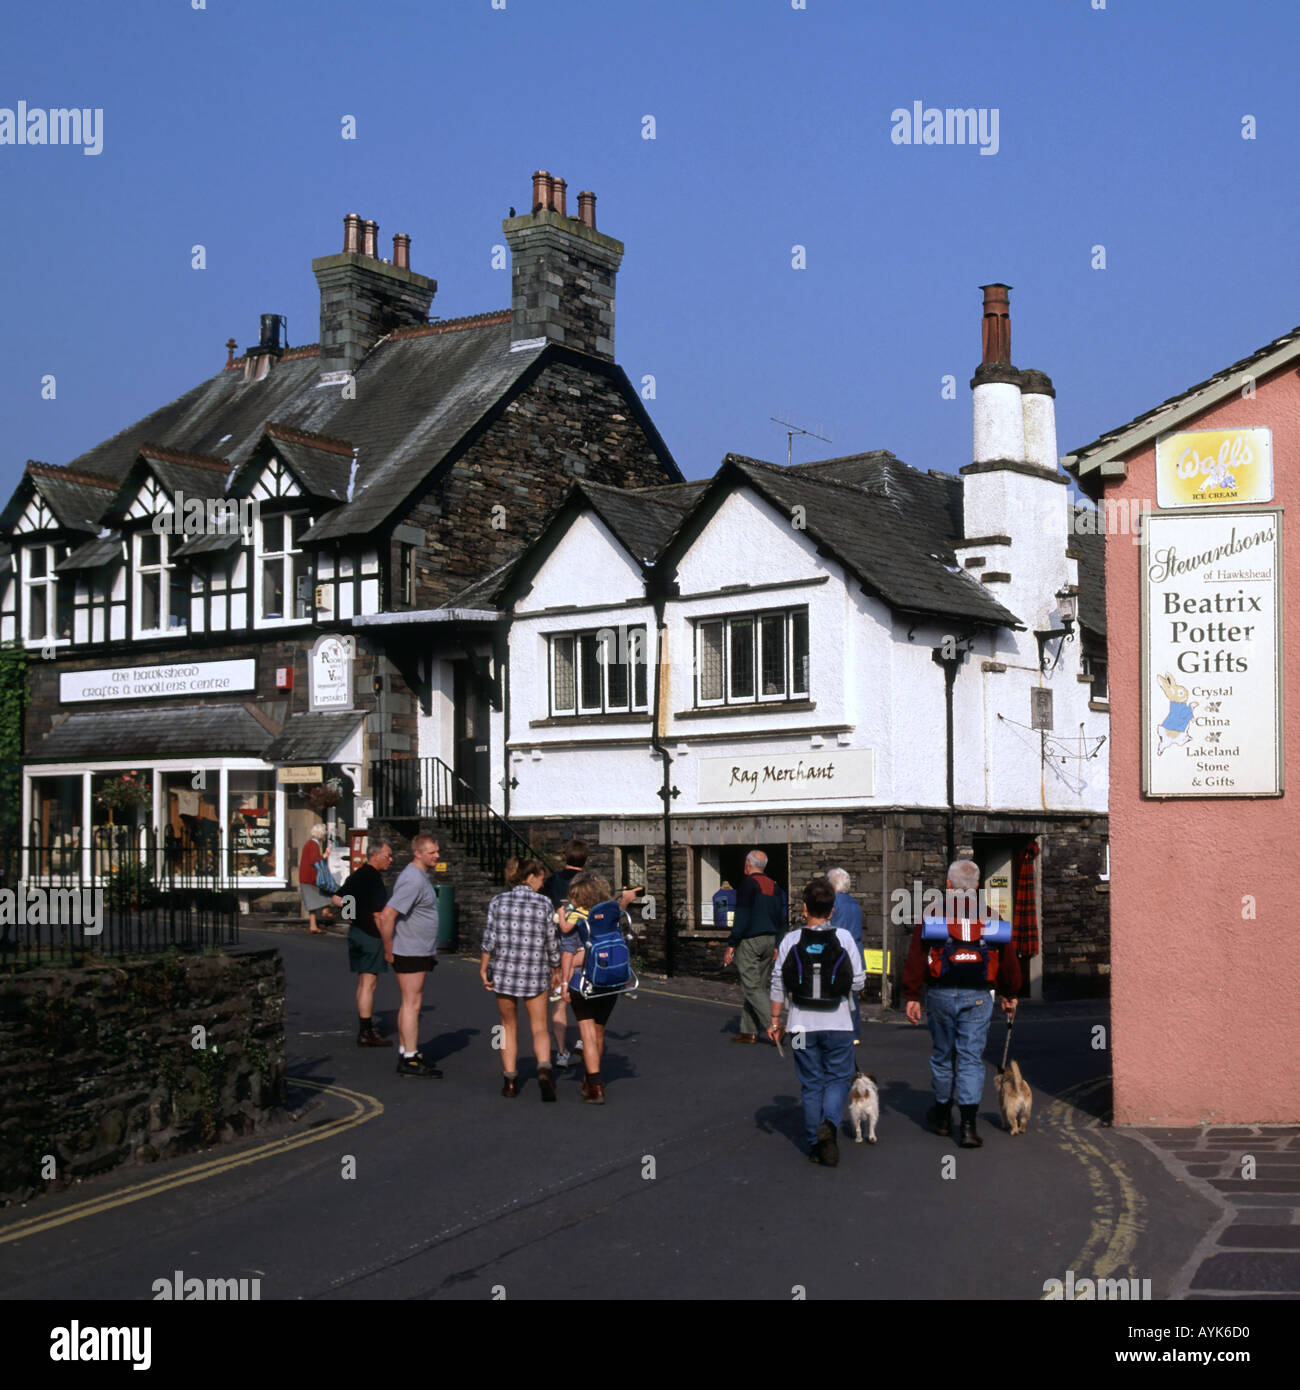 Ambleside Lake District Dorf Hundewiesen Paar & Rucksack Touristen neben Beatrix Potter Gift Shop anmelden Menschen in engen Straße Cumbria England Großbritannien Stockfoto